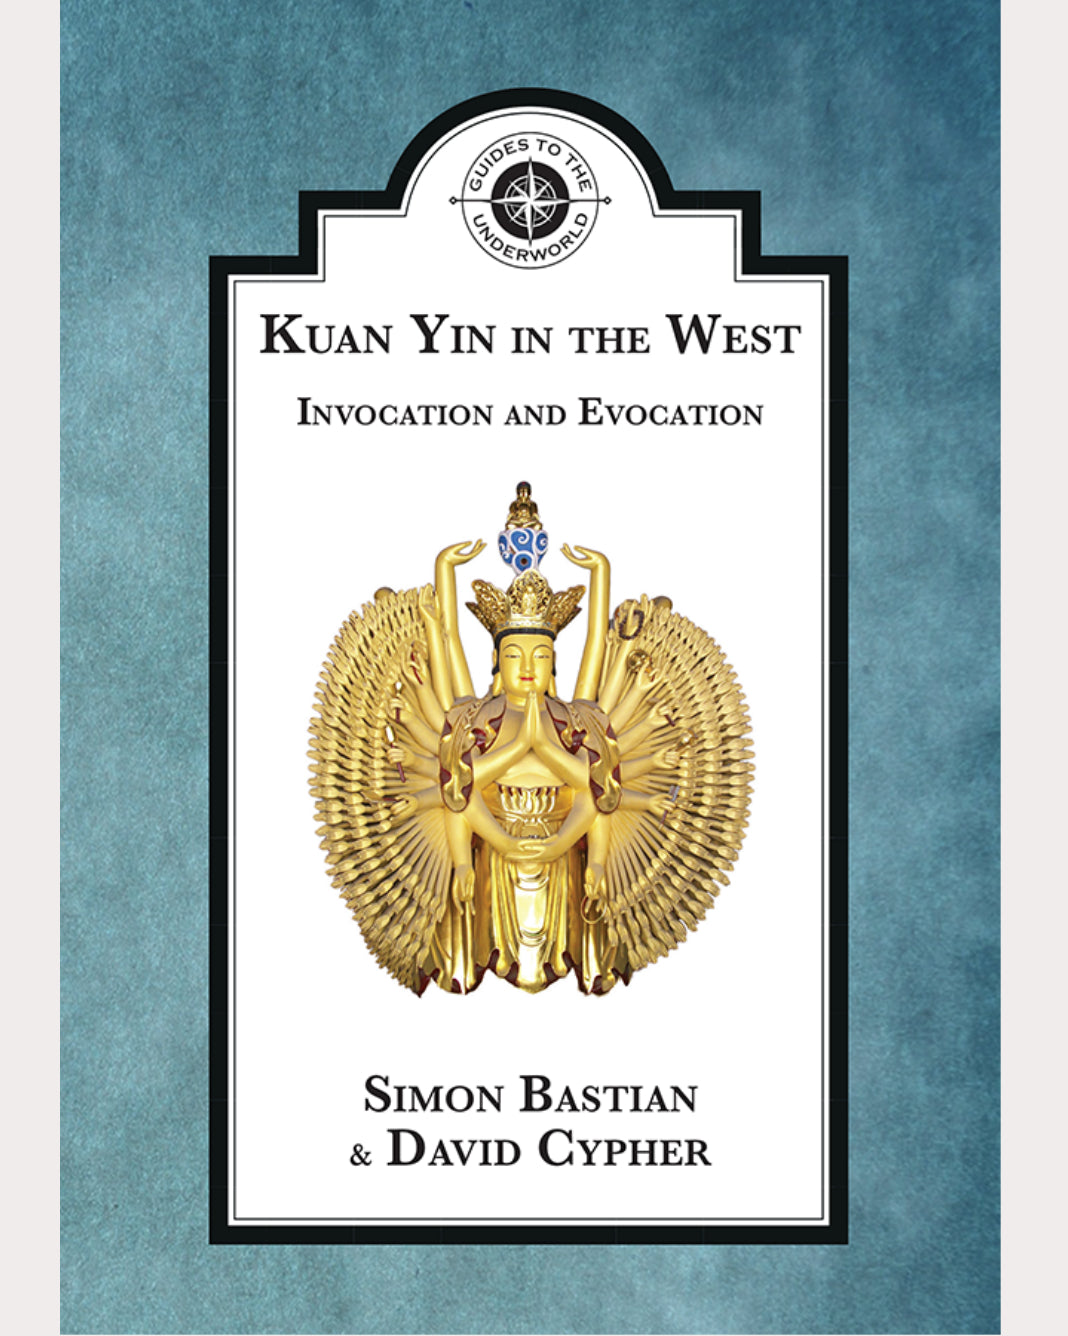 Kuan Yin in the West